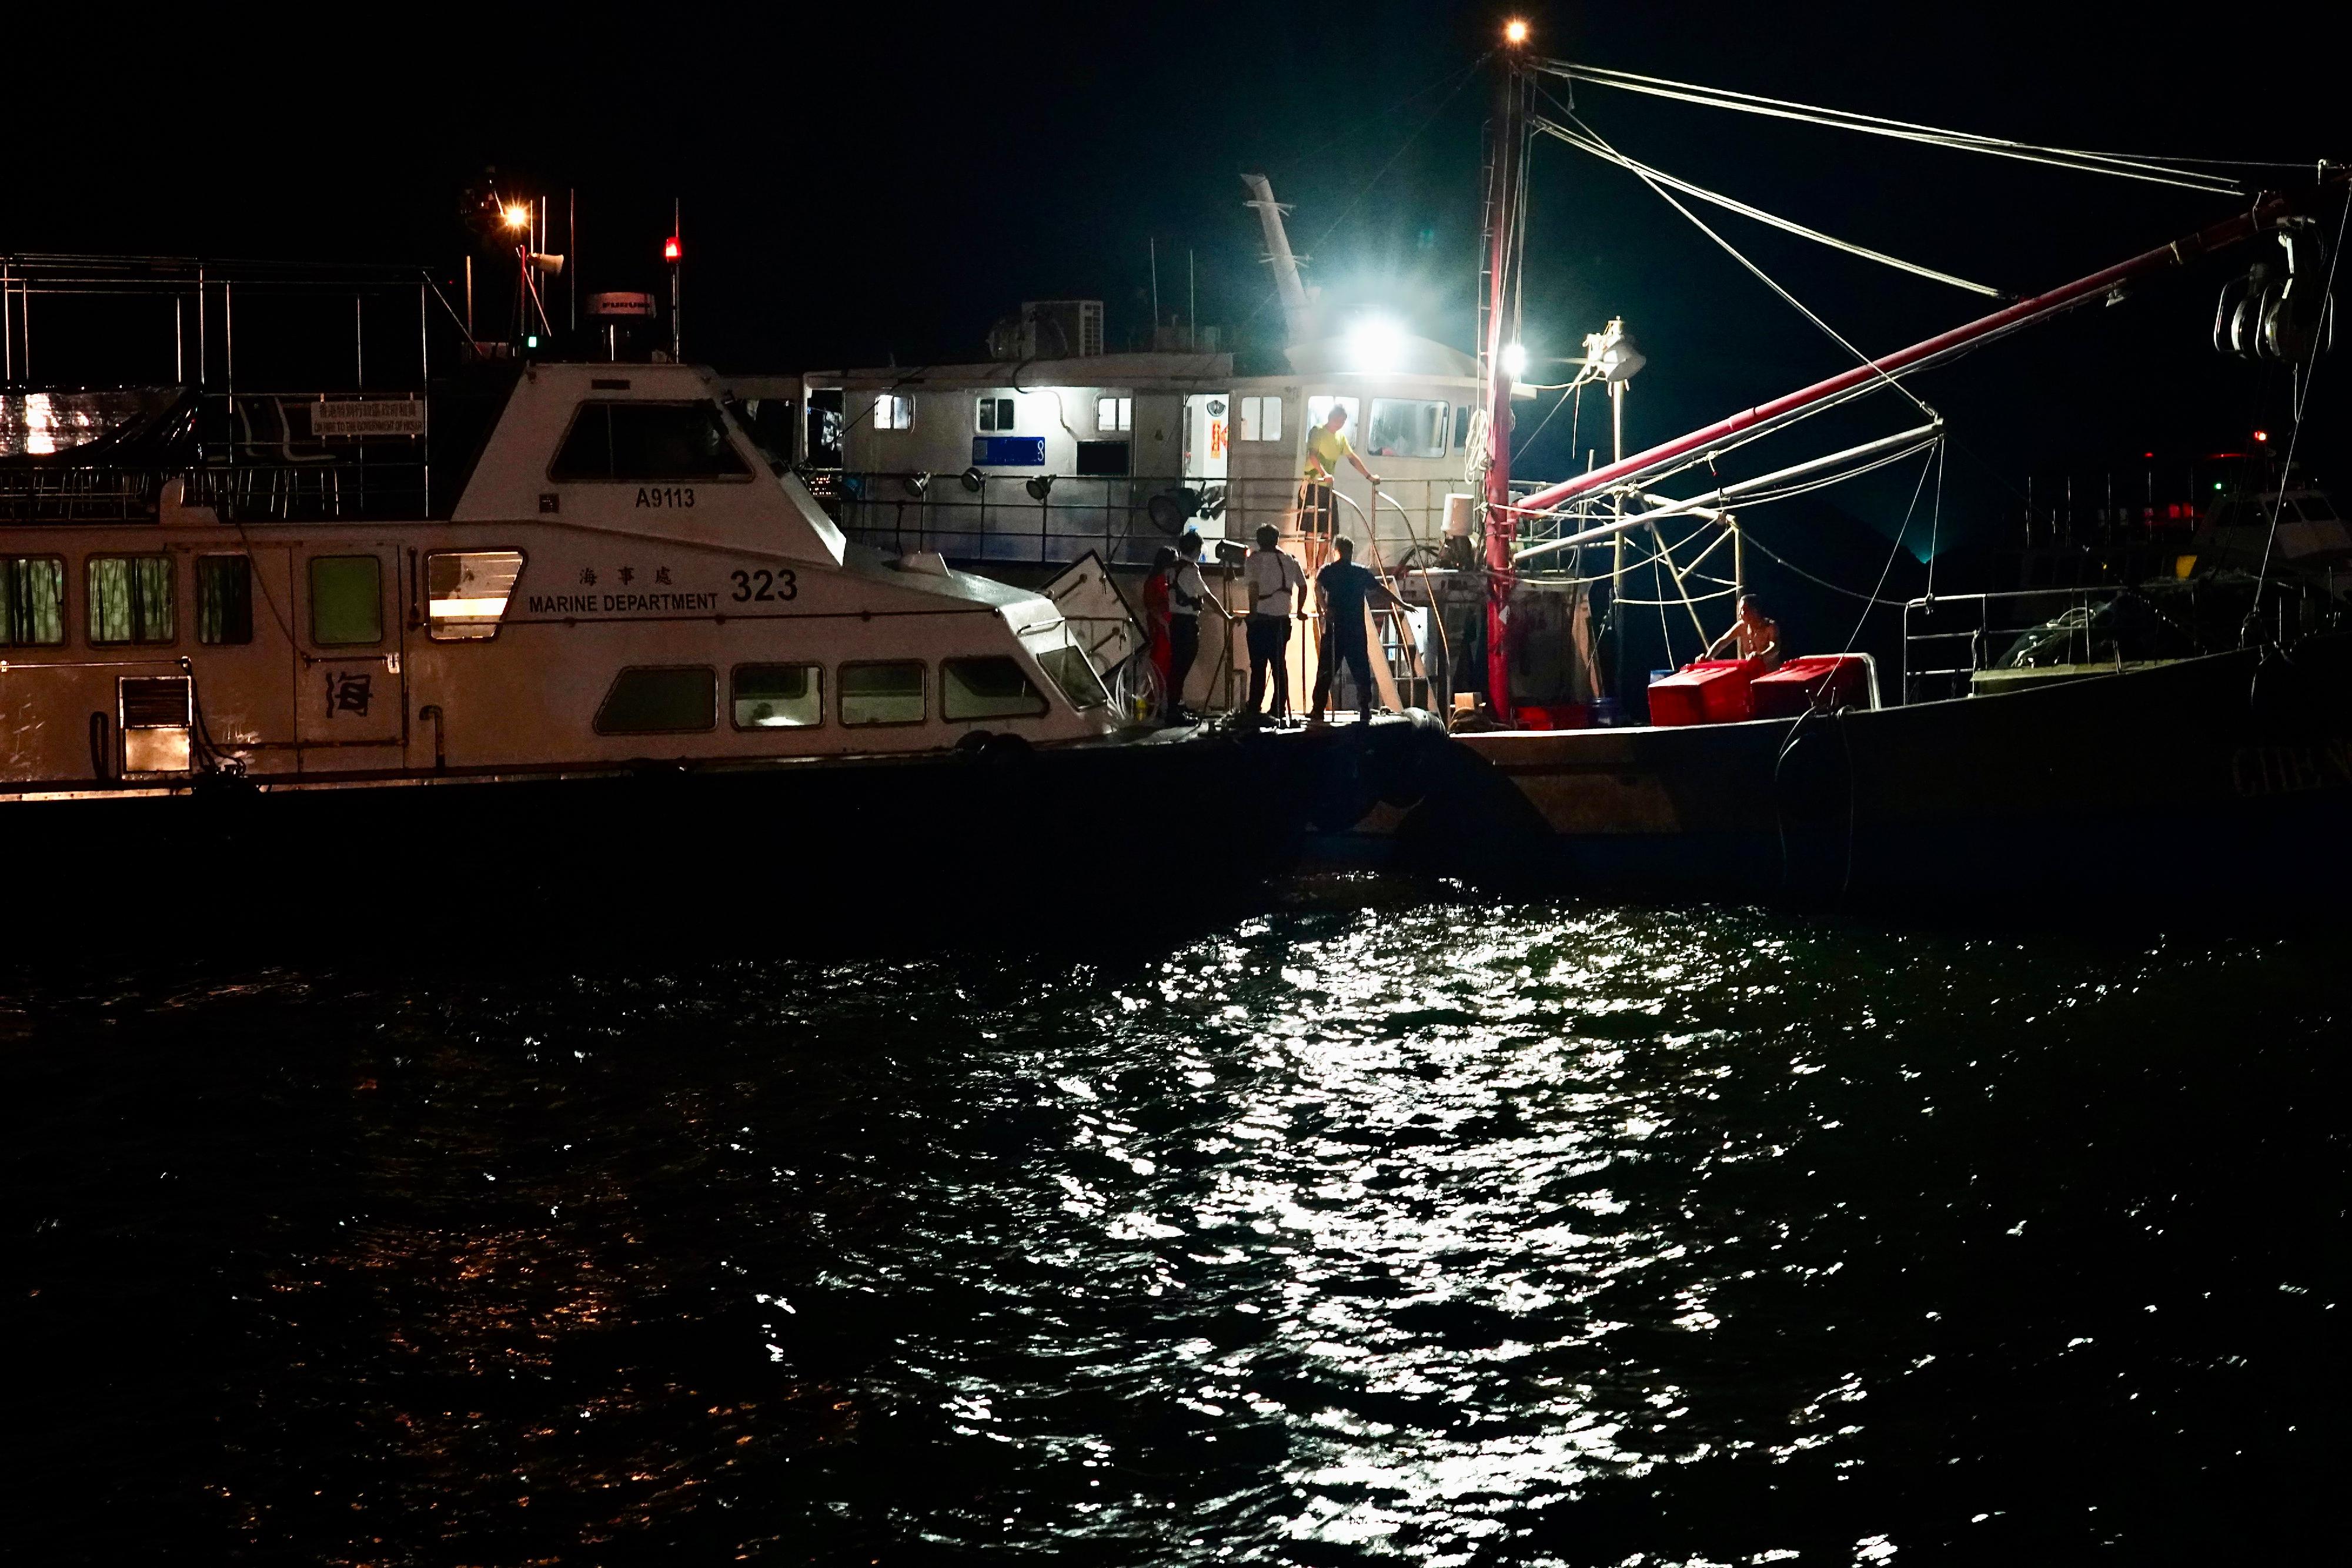 海事处于六月十四日和六月十八日晚上联同警务处及渔农自然护理署分别在香港东部及南部水域进行打击不适当使用光灯捕鱼及非法捕鱼的联合行动。图示海事处人员靠近一艘渔船，准备登上渔船进行检查。